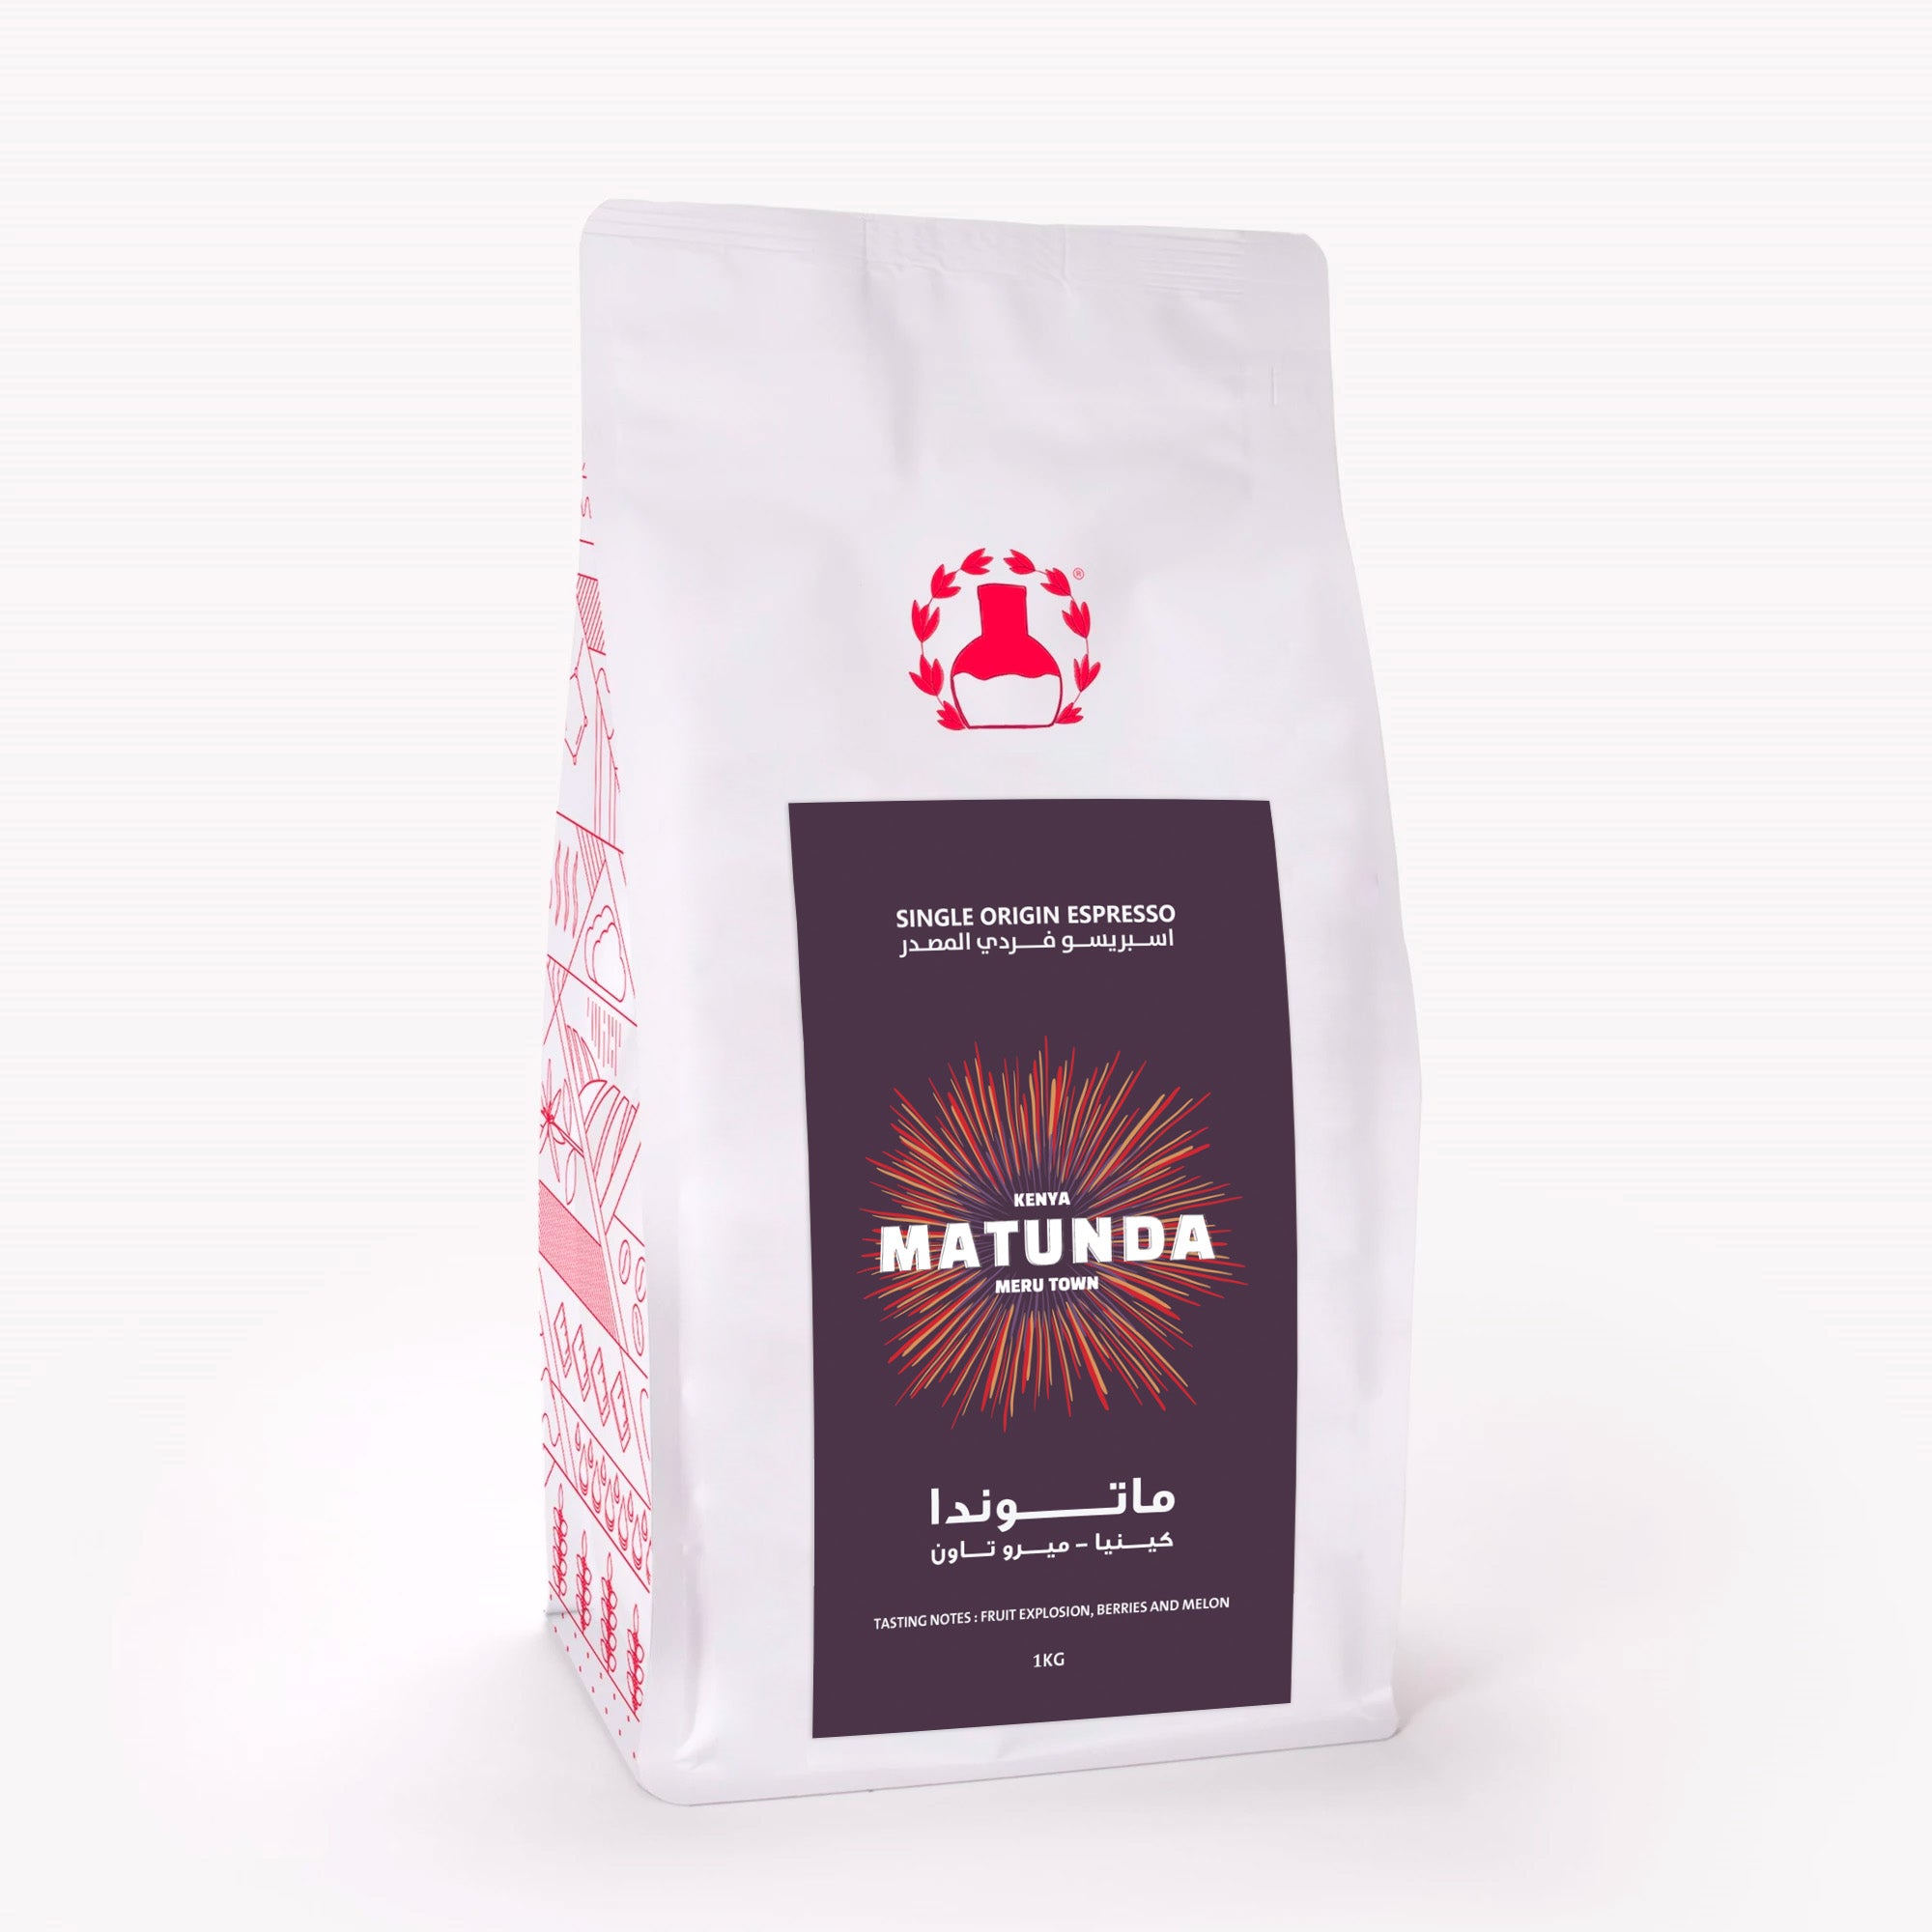 Matunda Meru Town Kenya - Single Origin Espresso